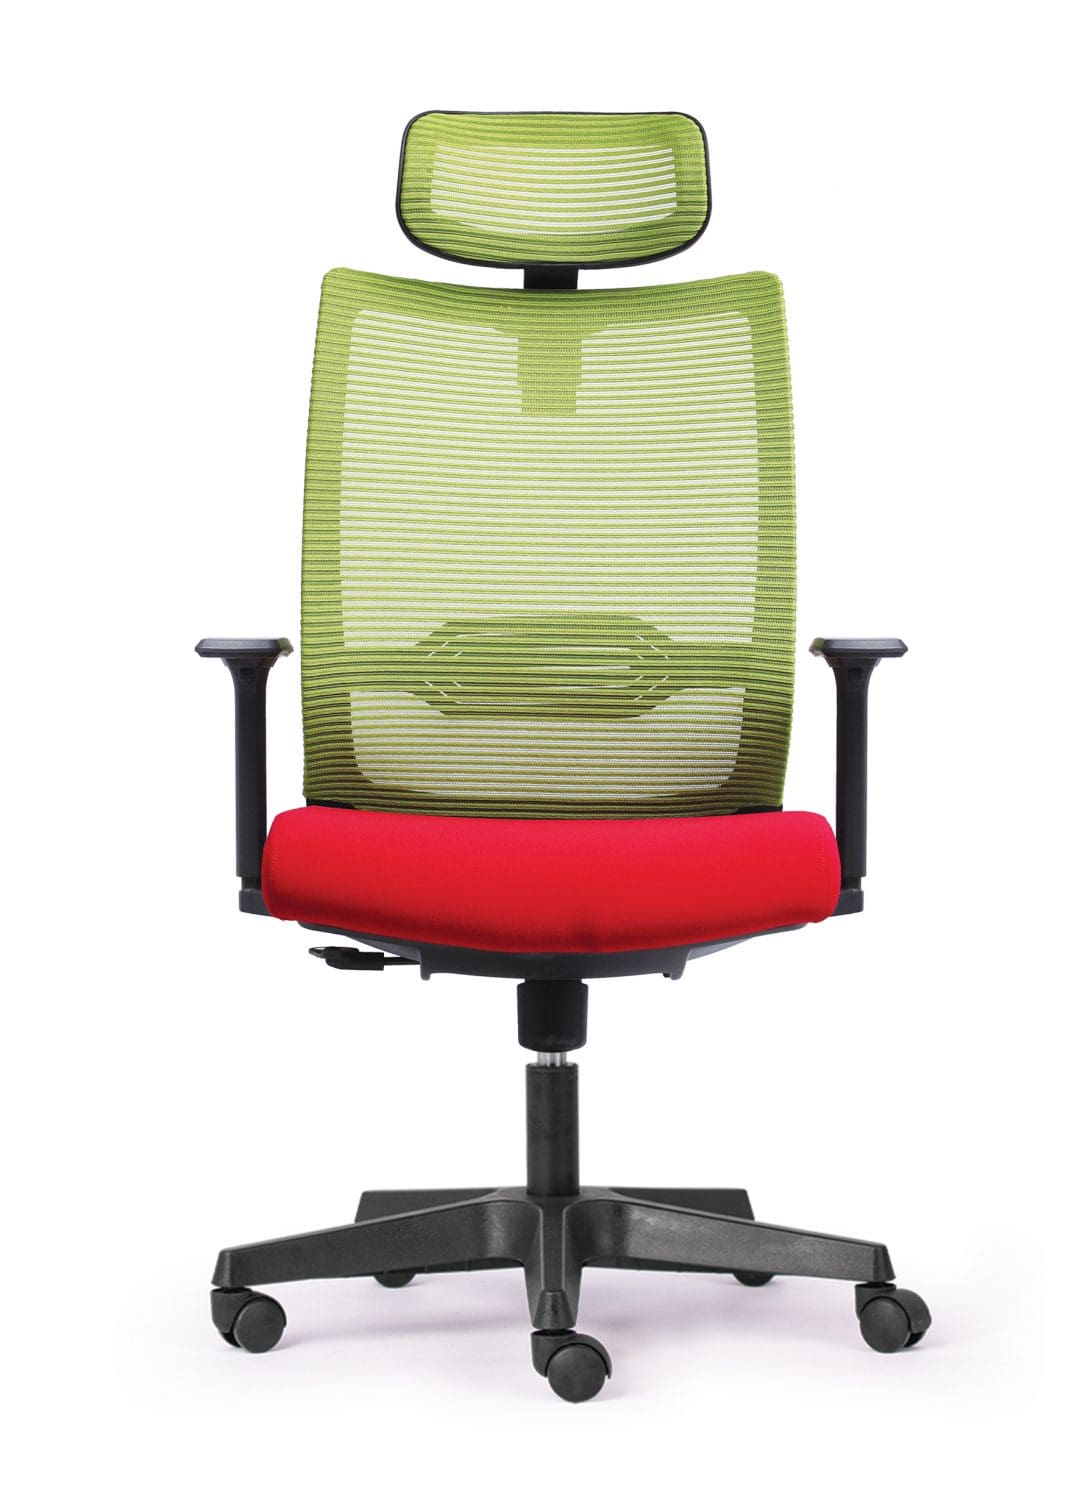 Tại sao nên sử dụng ghế văn phòng có tựa đầu?